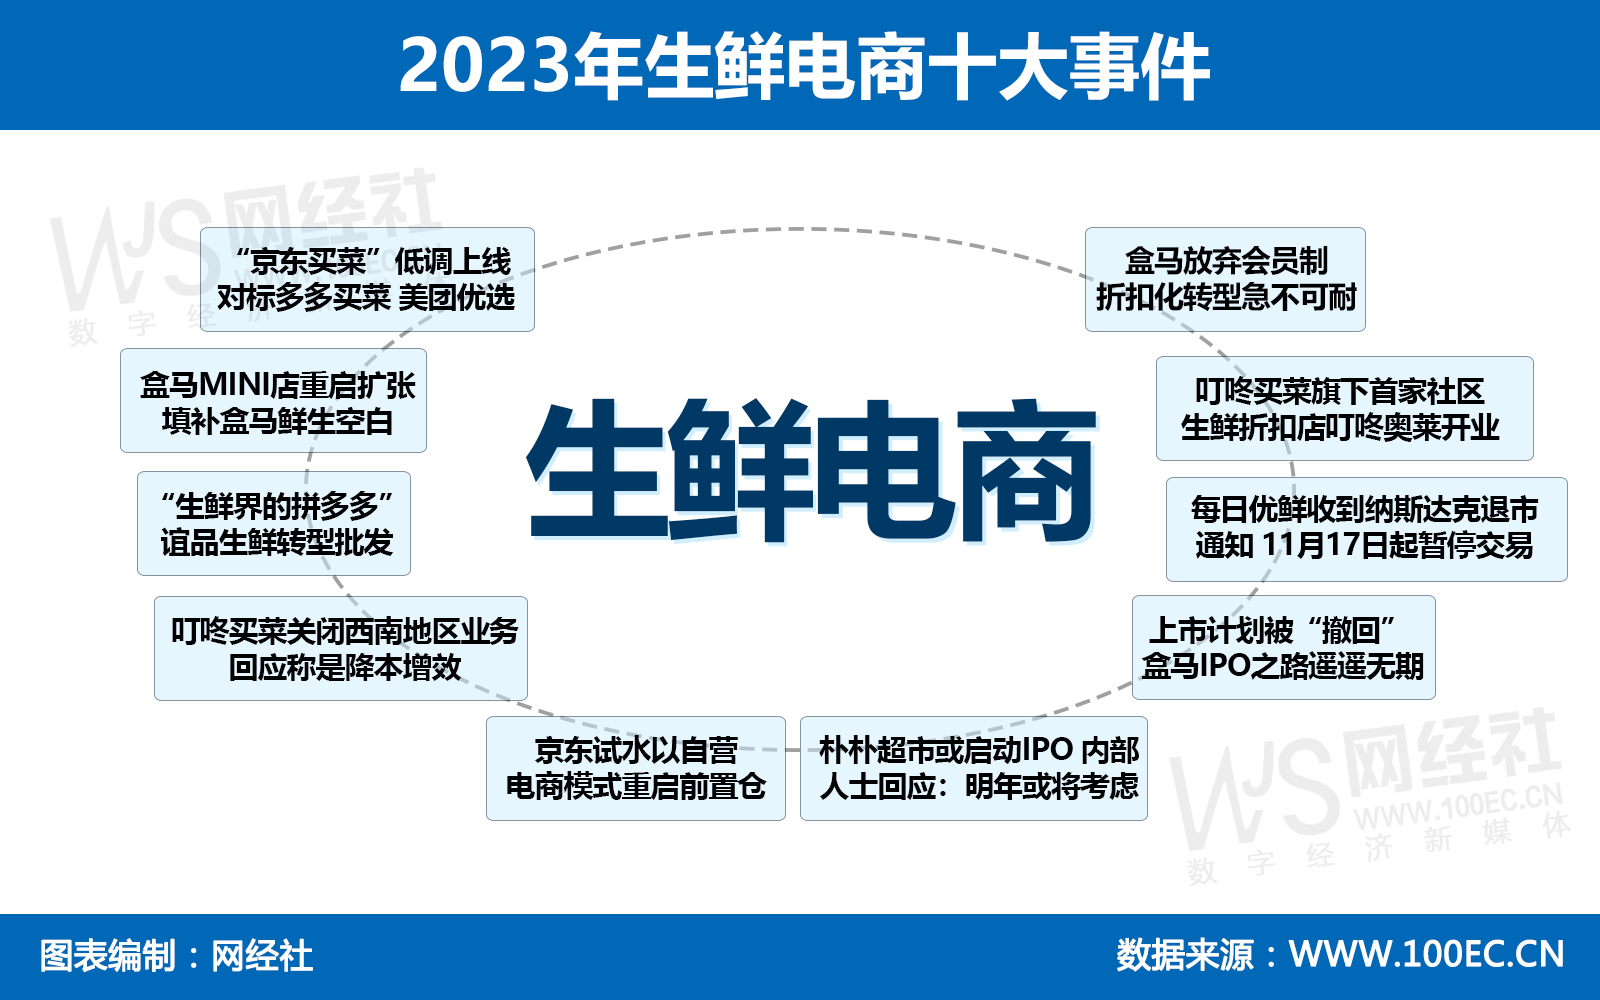 2023年生鲜电商十大事件.jpg